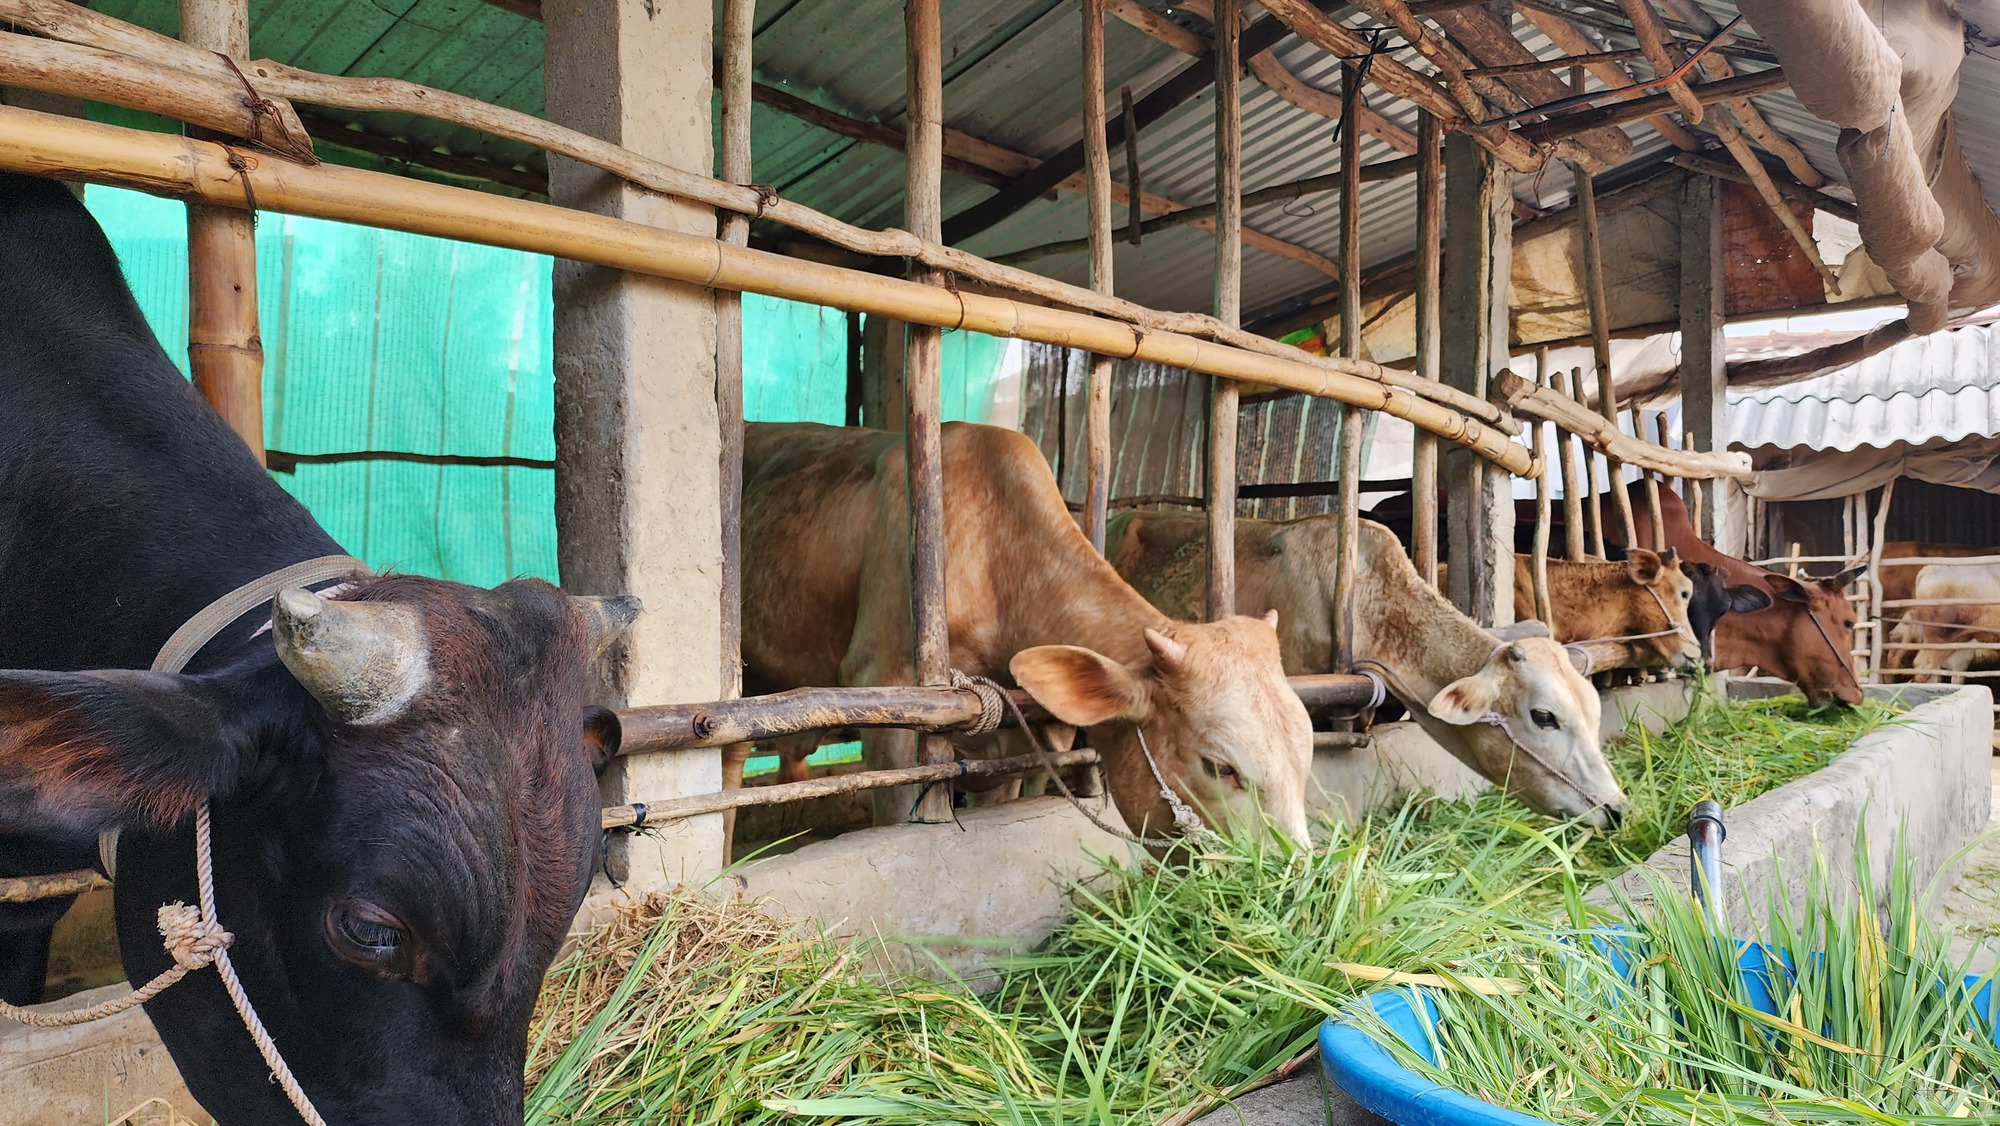 Nhờ dự án nuôi bò trên 2.000 tỷ đồng, nông dân Sóc Trăng tăng thu nhập bền vững - Ảnh 3.